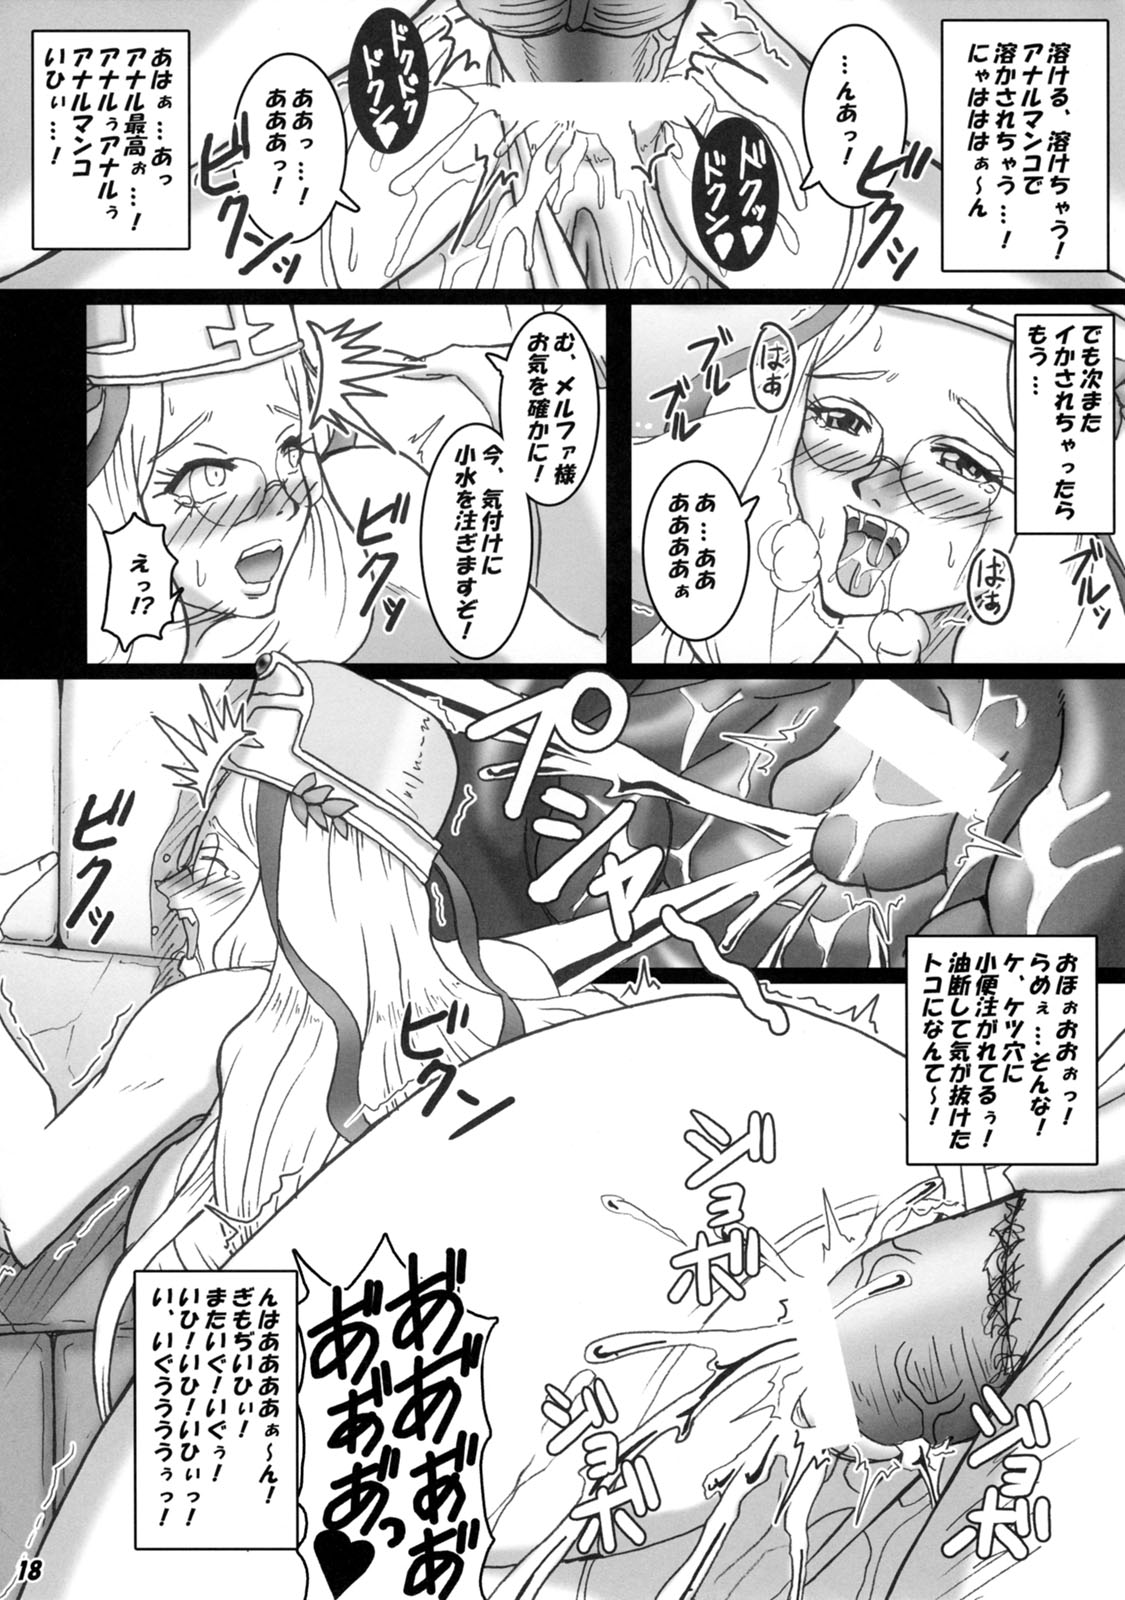 [MEAN MACHINE (Seijiro Mifune)] Saijo Melfa no Houetsu (Queen's Blade) page 17 full